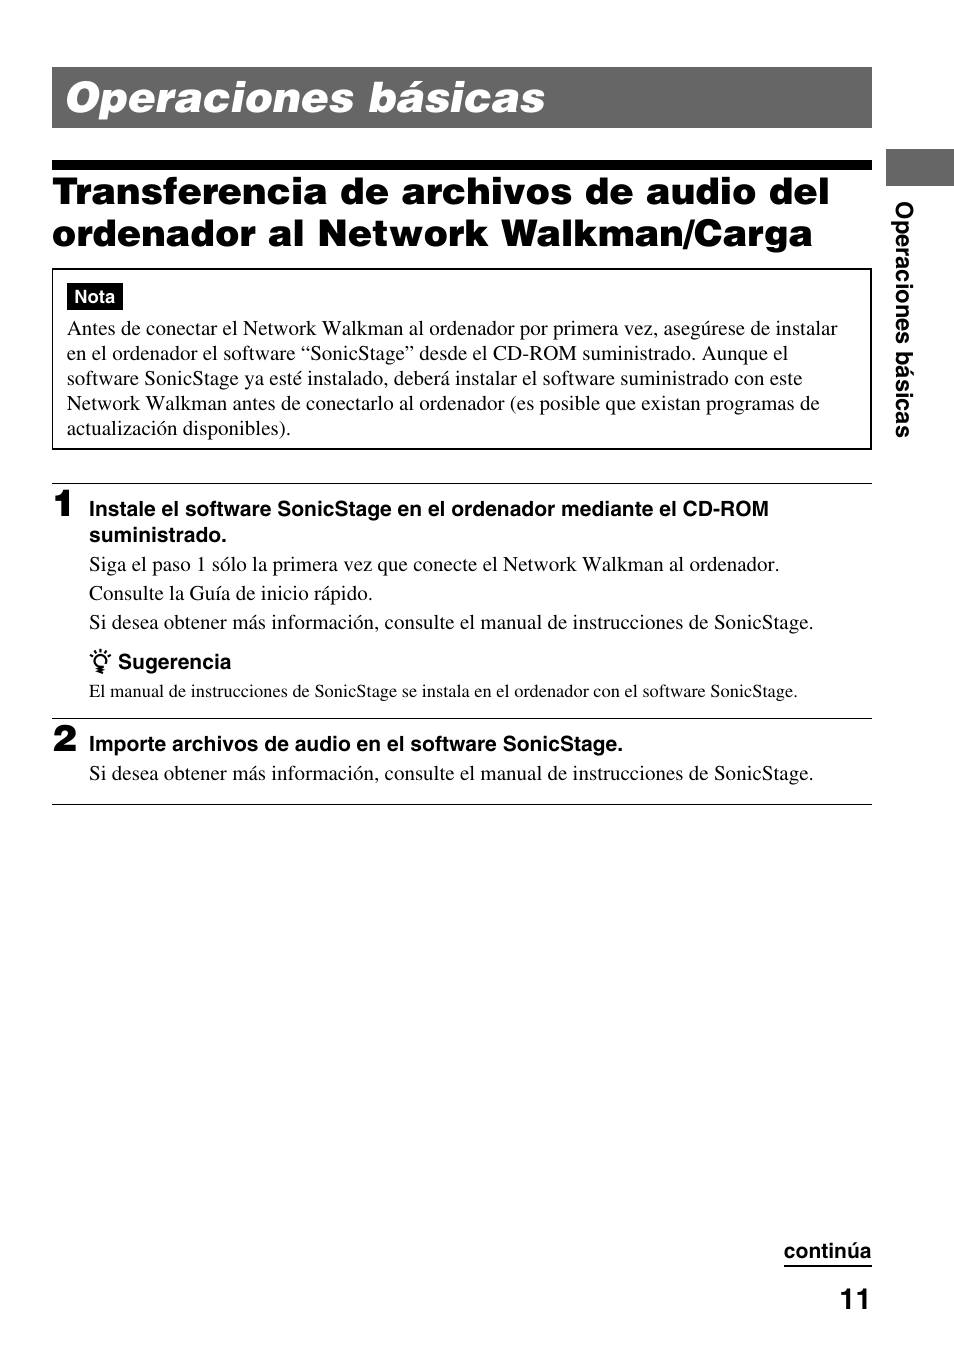 Operaciones básicas, Transferencia de archivos de audio del, Ordenador al network walkman/ carga | Sony NW-E503 Manual del usuario | Página 11 / 59